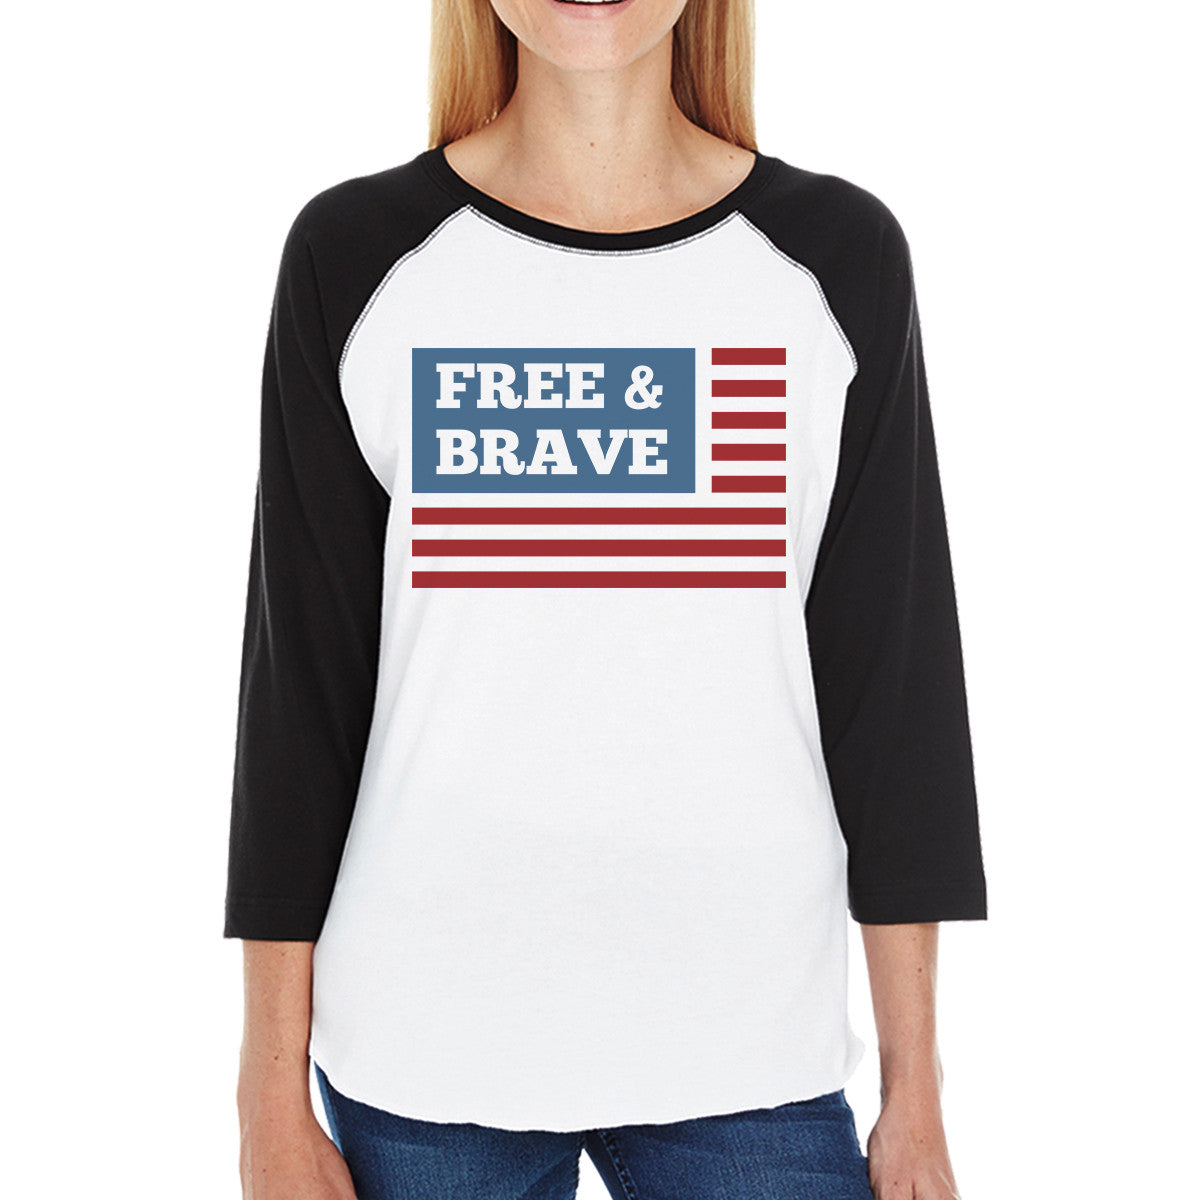 Free & Brave Us Flag Womens Black Raglan Tee Shirt Cotton Cr